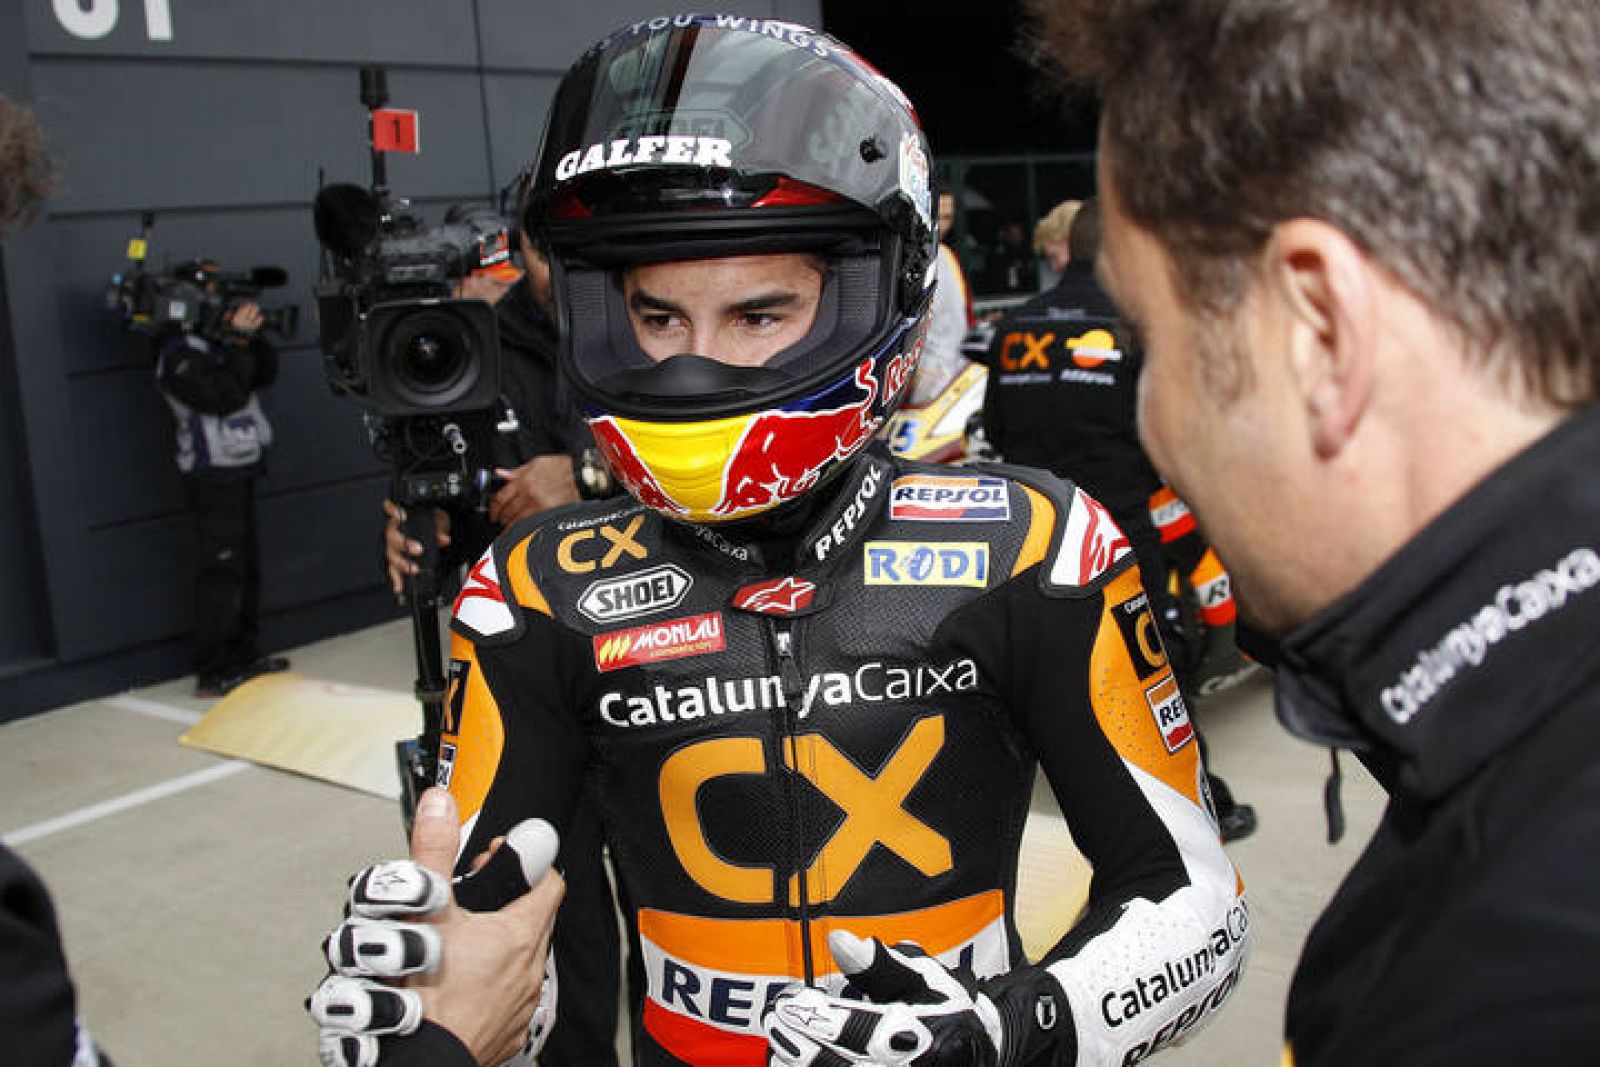 Marc Márquez tendrá que recuperarse de la operación en la vista antes de arrancar el mundial de Moto2 de 2012.